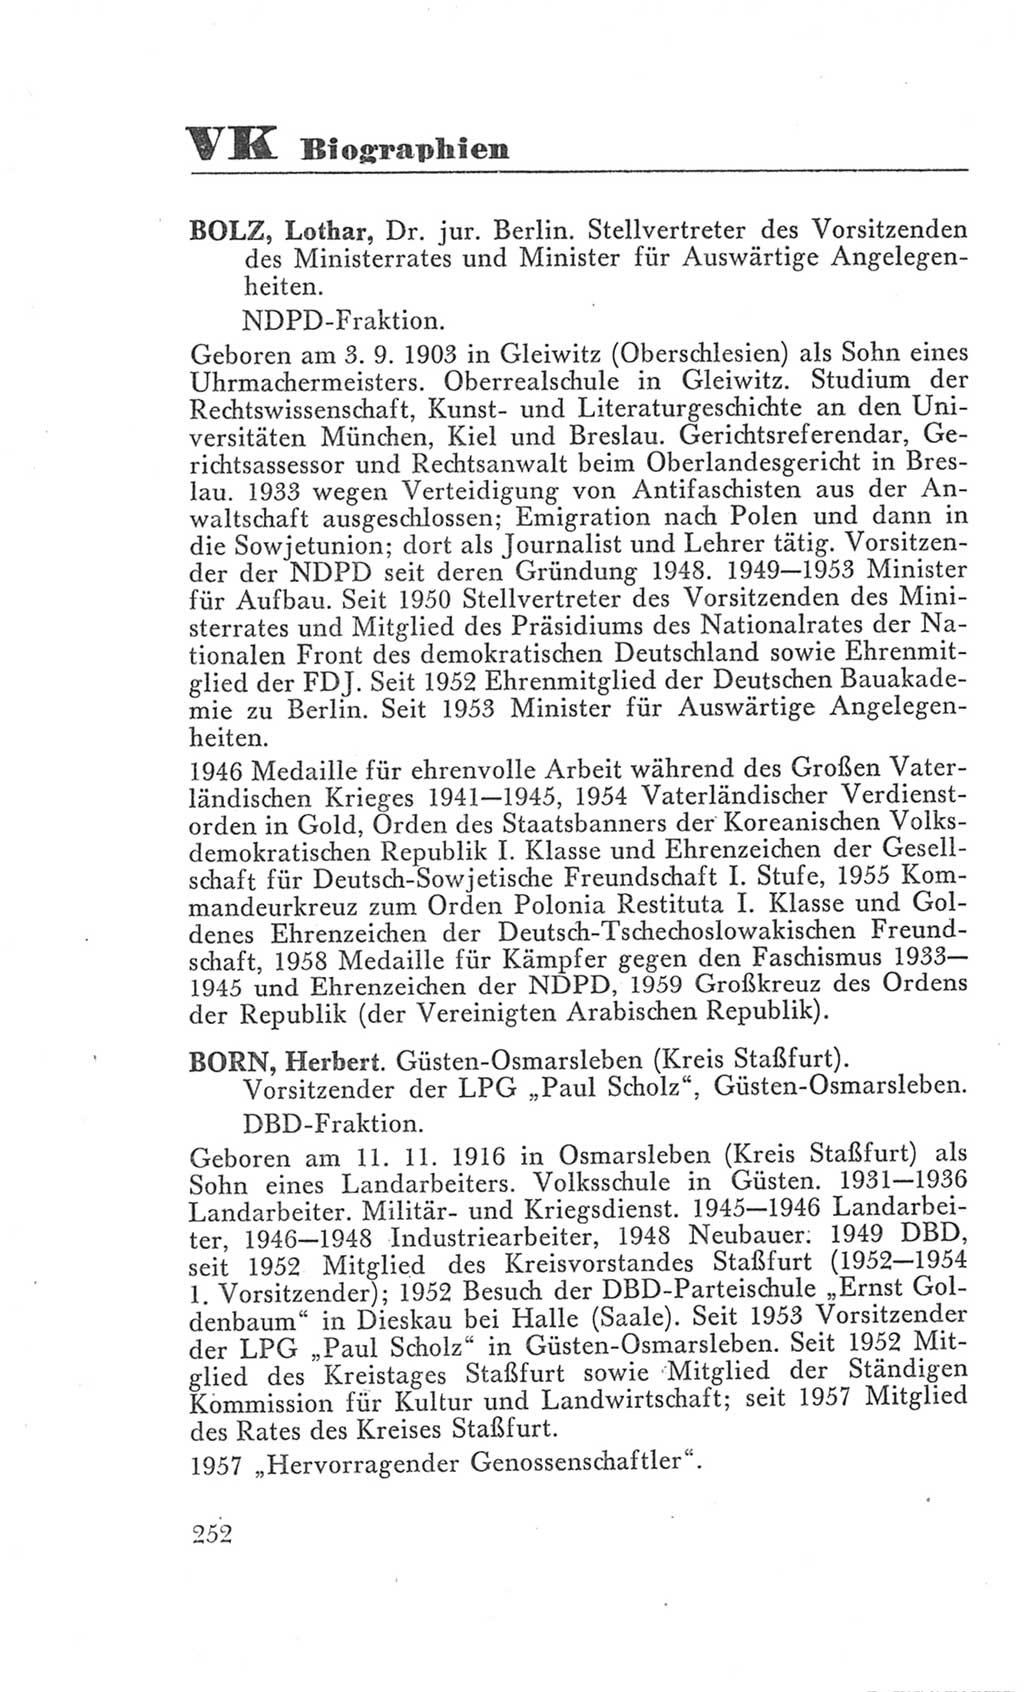 Handbuch der Volkskammer (VK) der Deutschen Demokratischen Republik (DDR), 3. Wahlperiode 1958-1963, Seite 252 (Hdb. VK. DDR 3. WP. 1958-1963, S. 252)